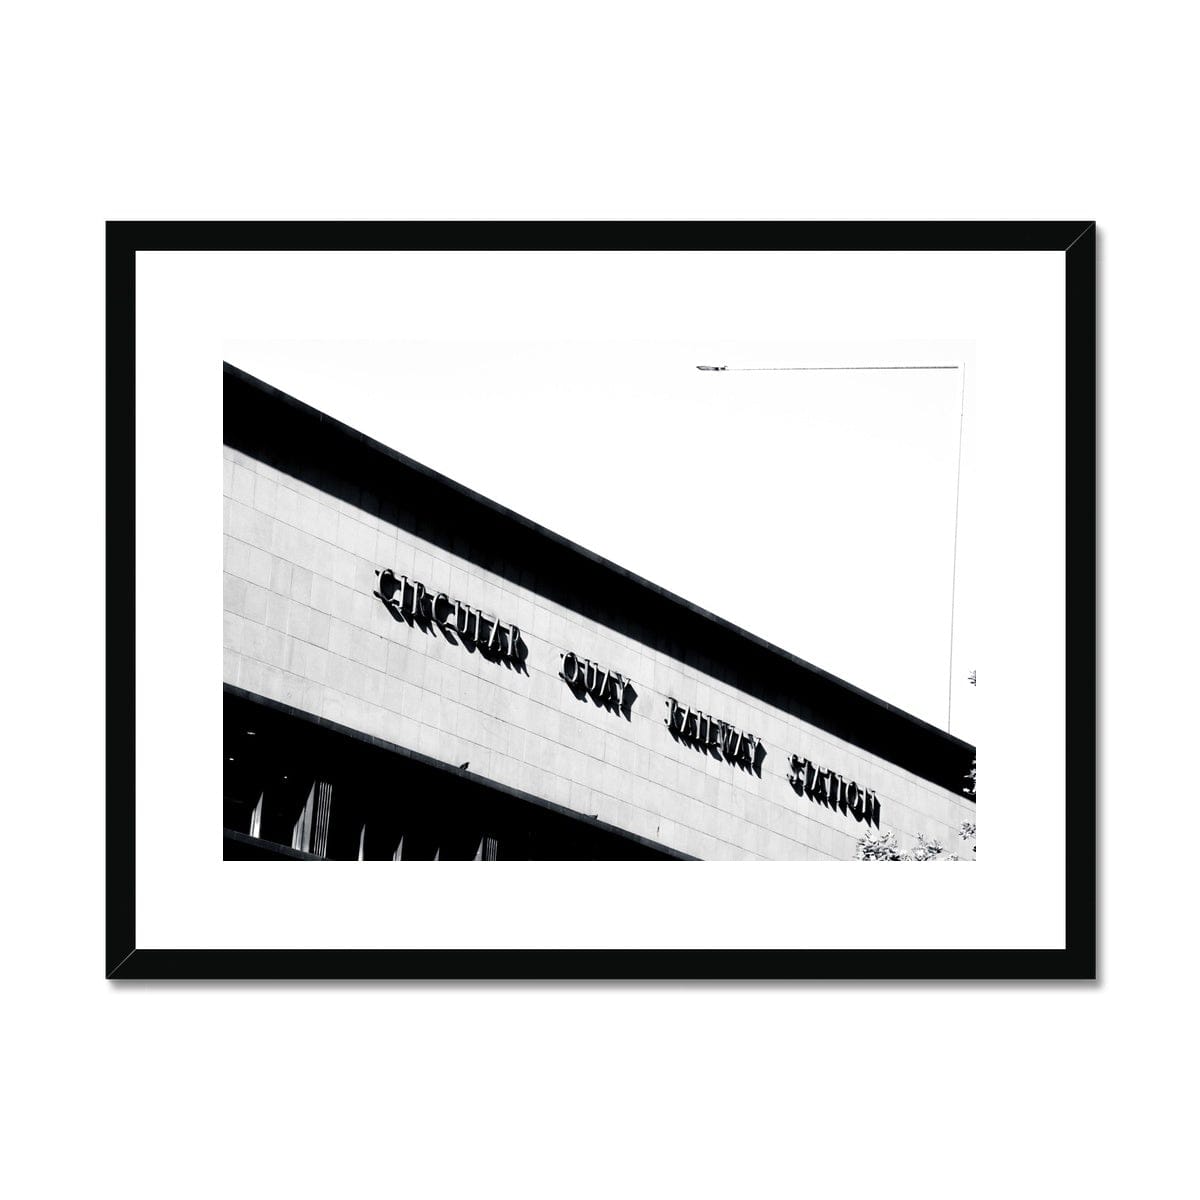 Adam Davies Framed A4 Landscape (29x21cm / Black Frame Circular Quay Station Art Deco Monochrome Framed Print